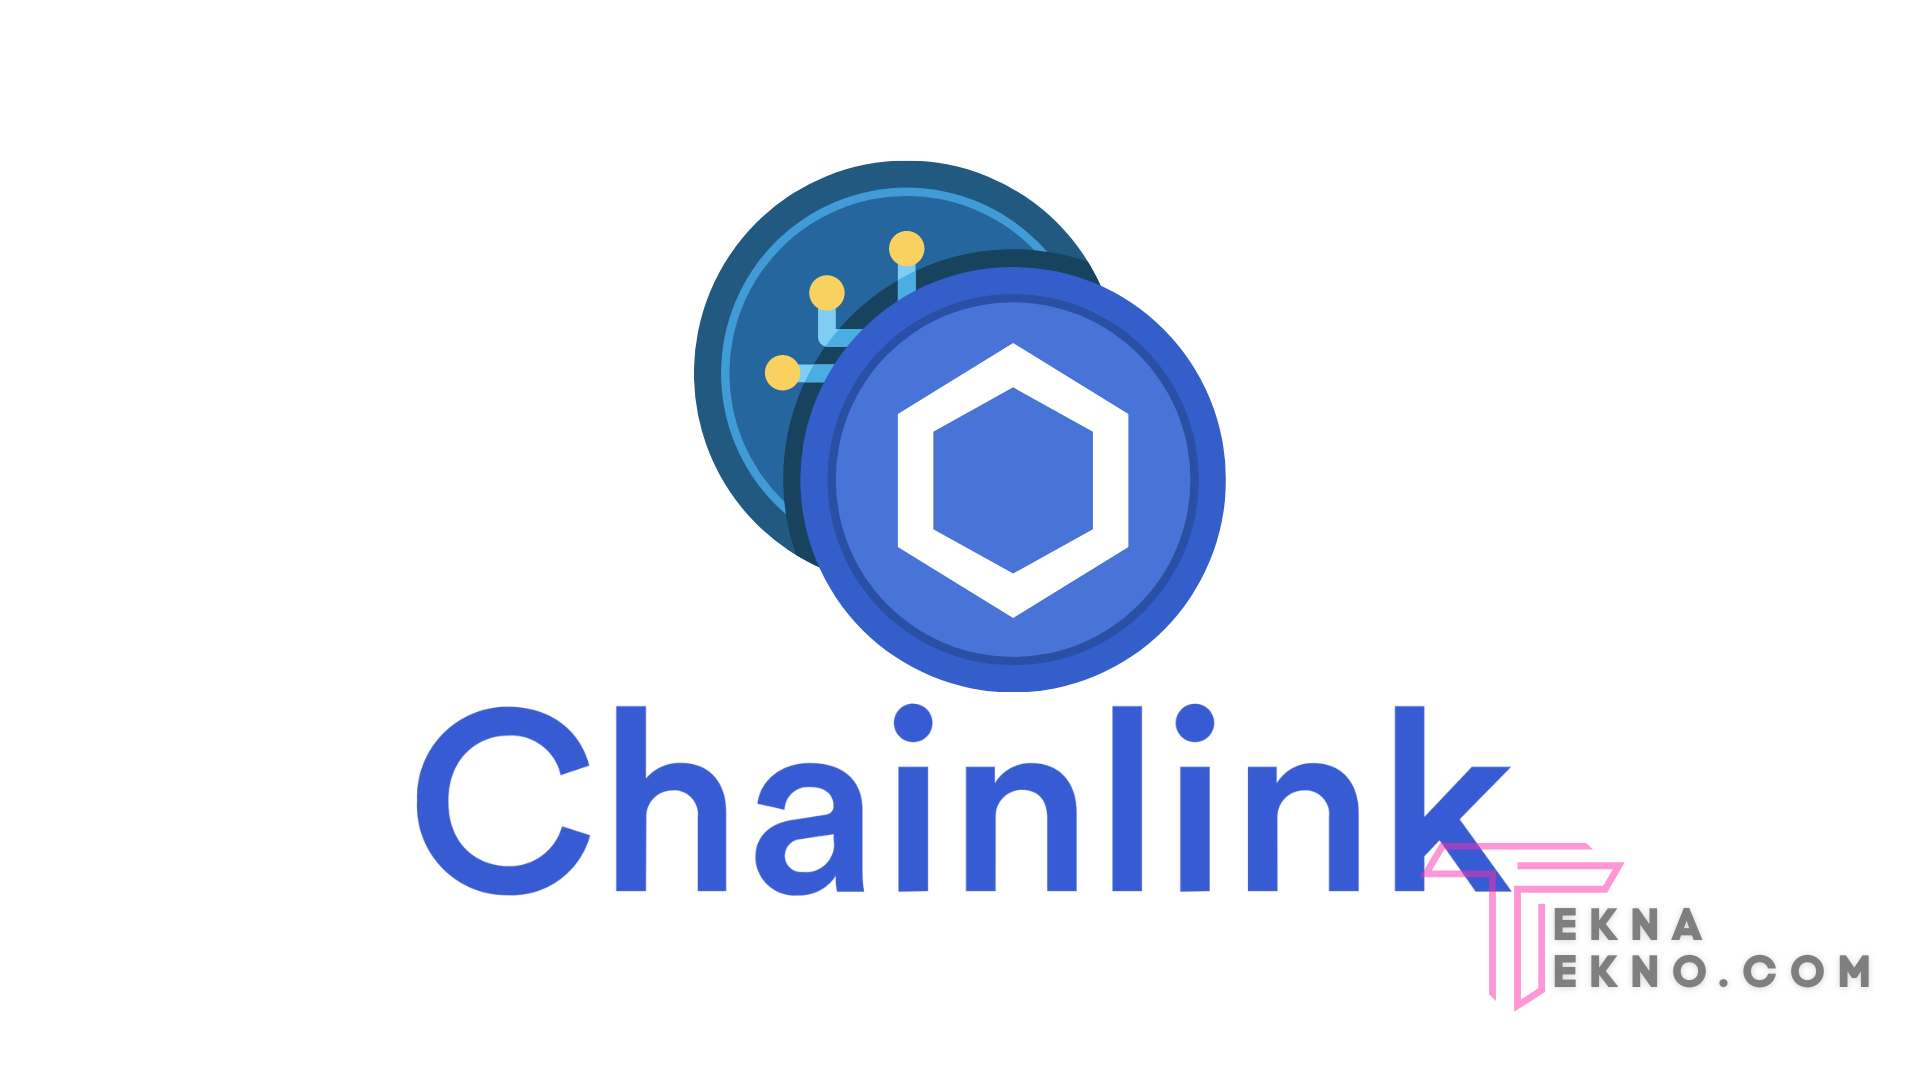 Mengenal Chainlink (LINK)